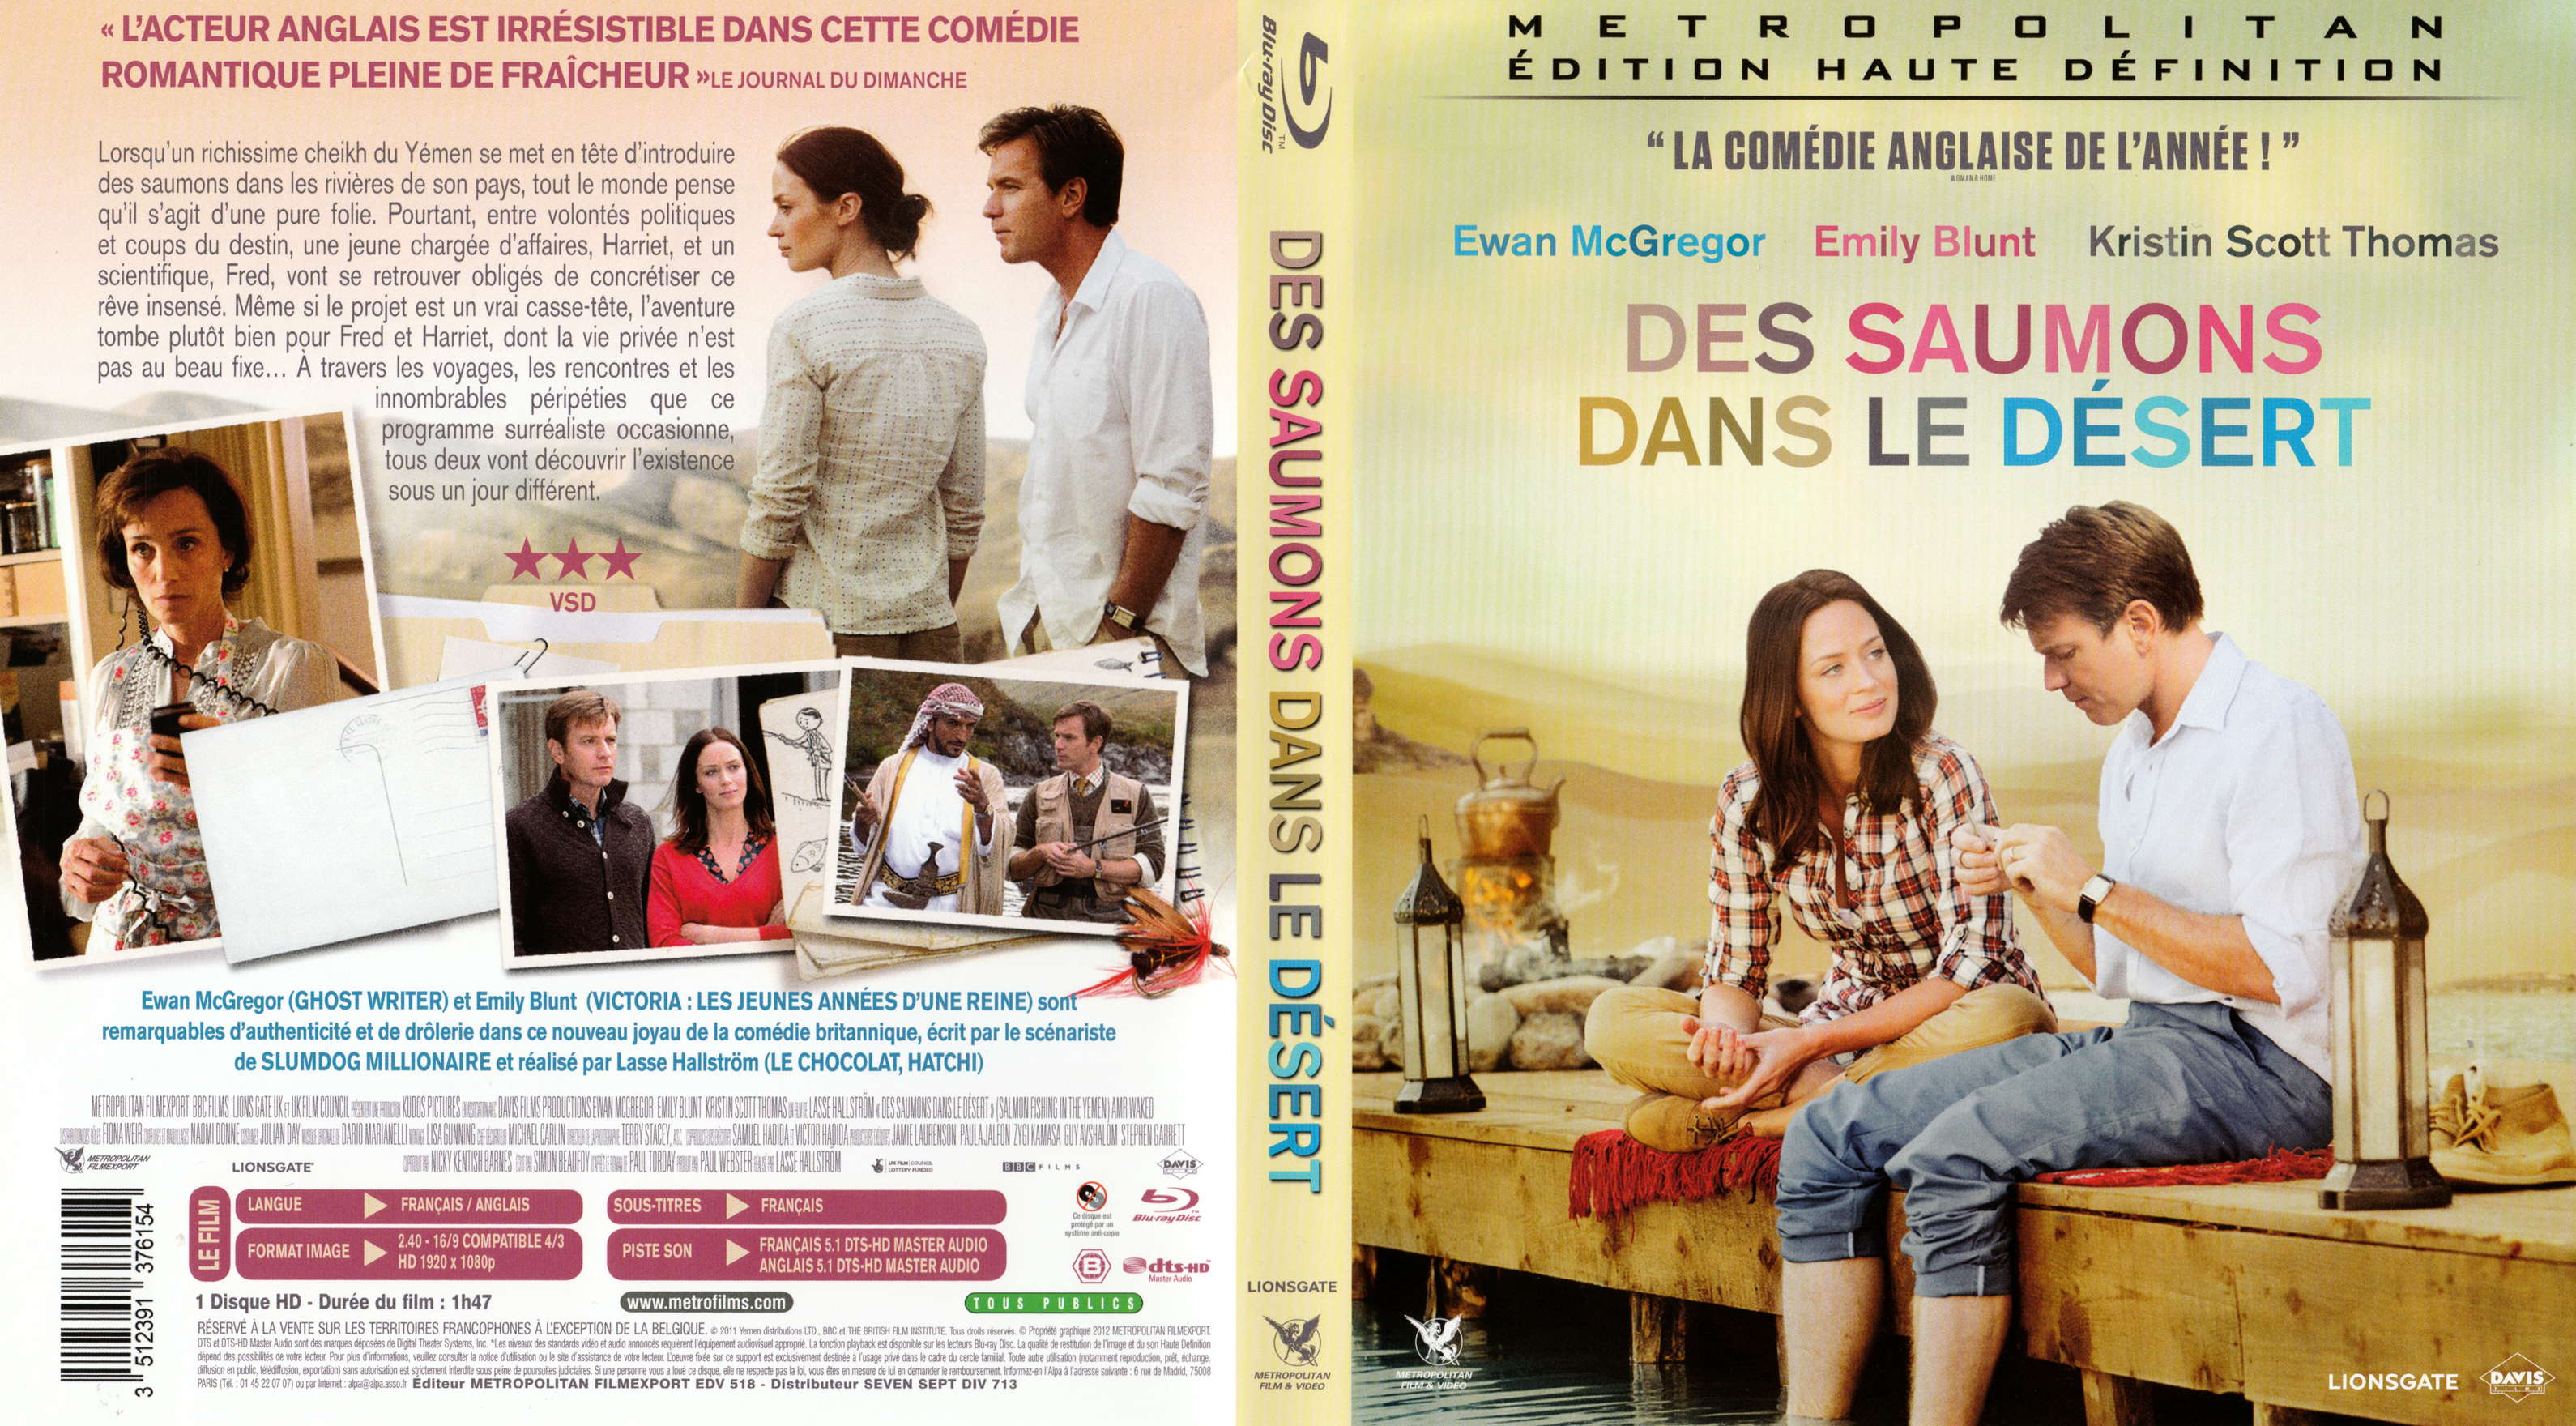 Jaquette DVD Des saumons dans le desert (BLU-RAY)